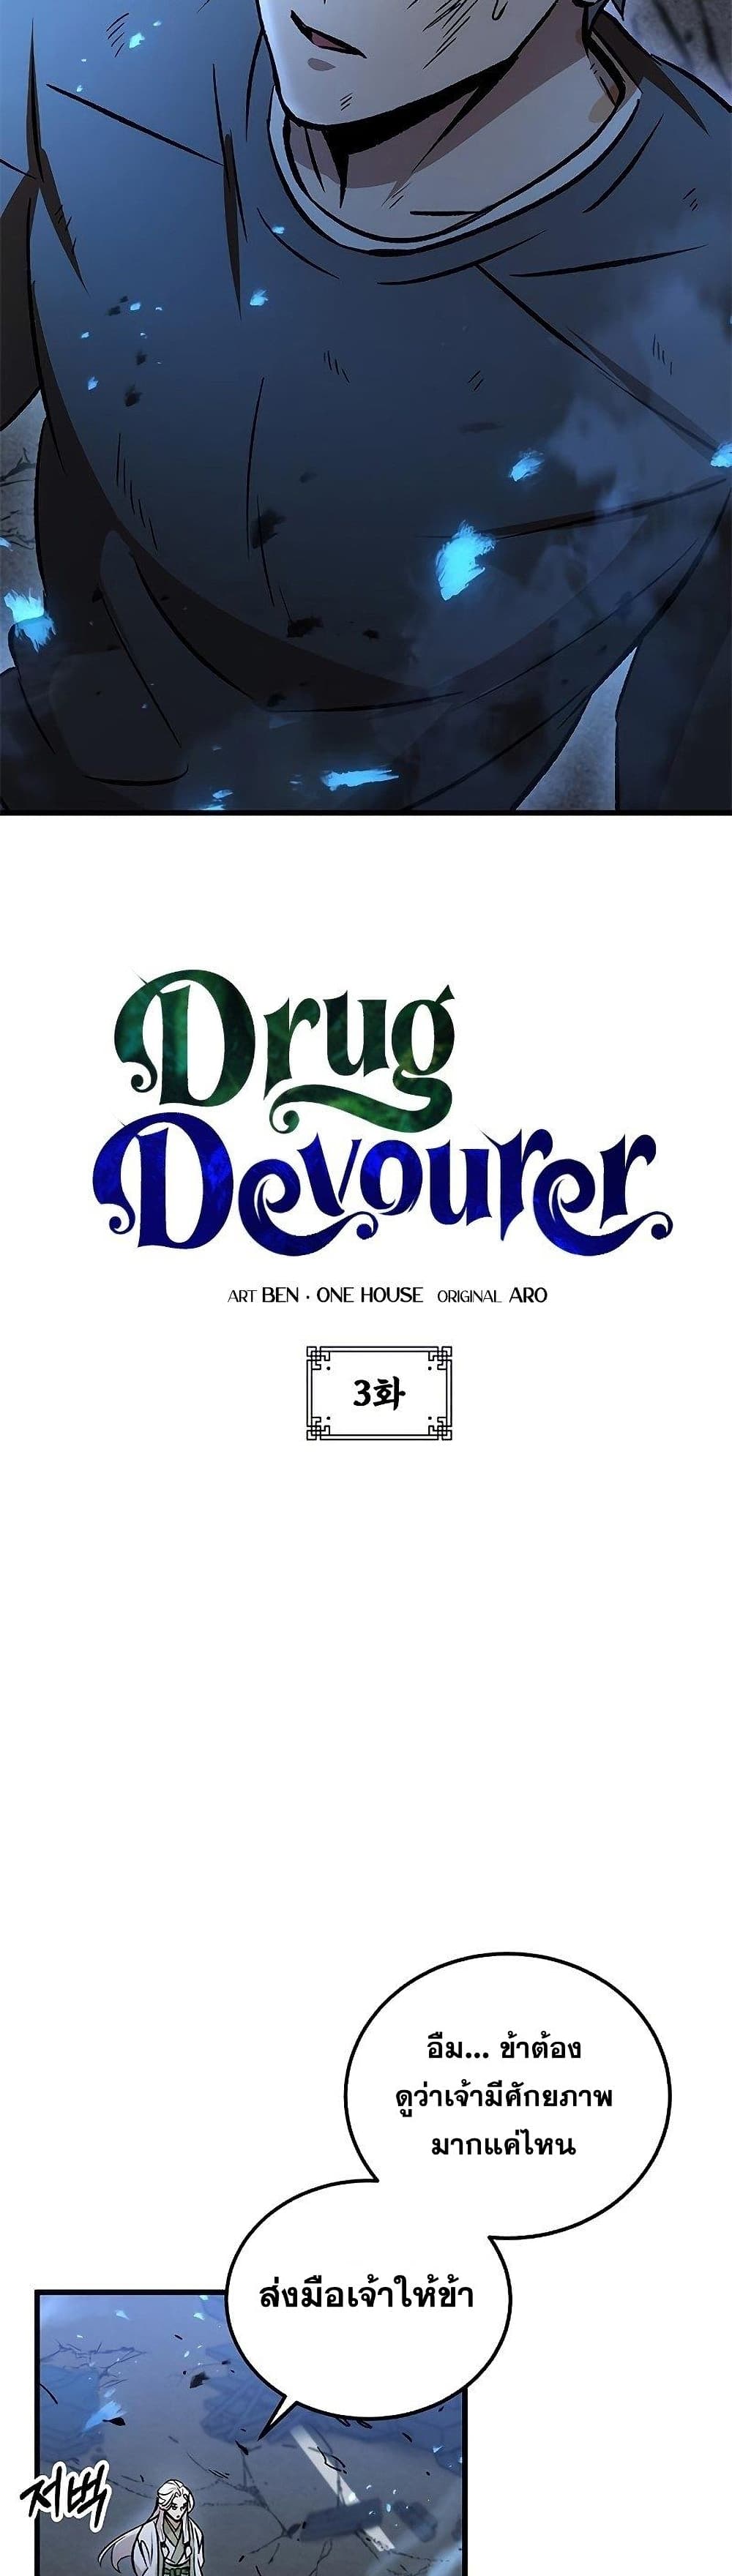 Drug Devourer 3 03